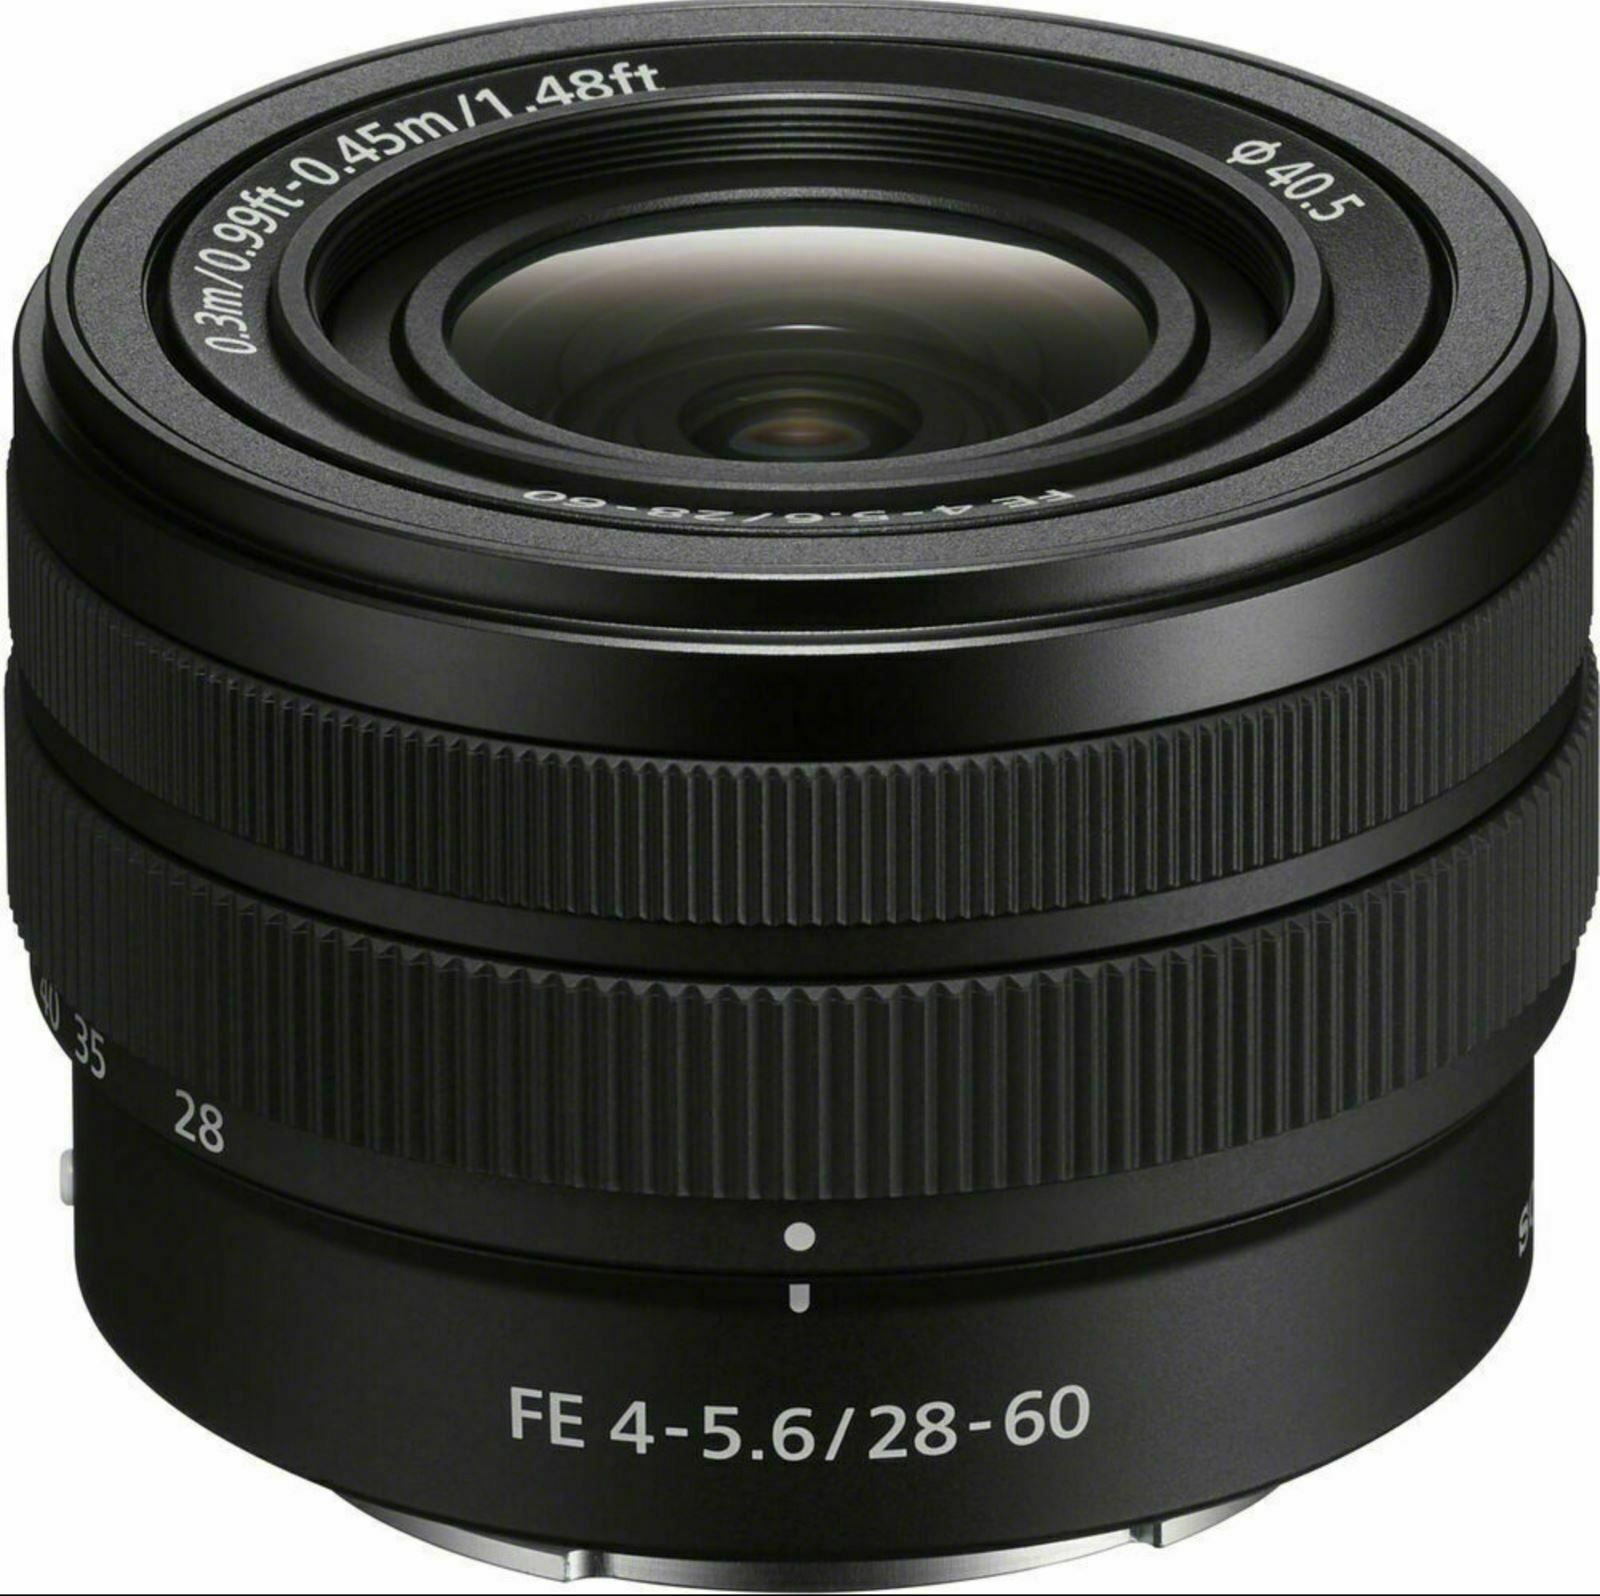 SONY FE 28-60mm F4-5.6 Full Frame Compact Zoom Lens SEL2860